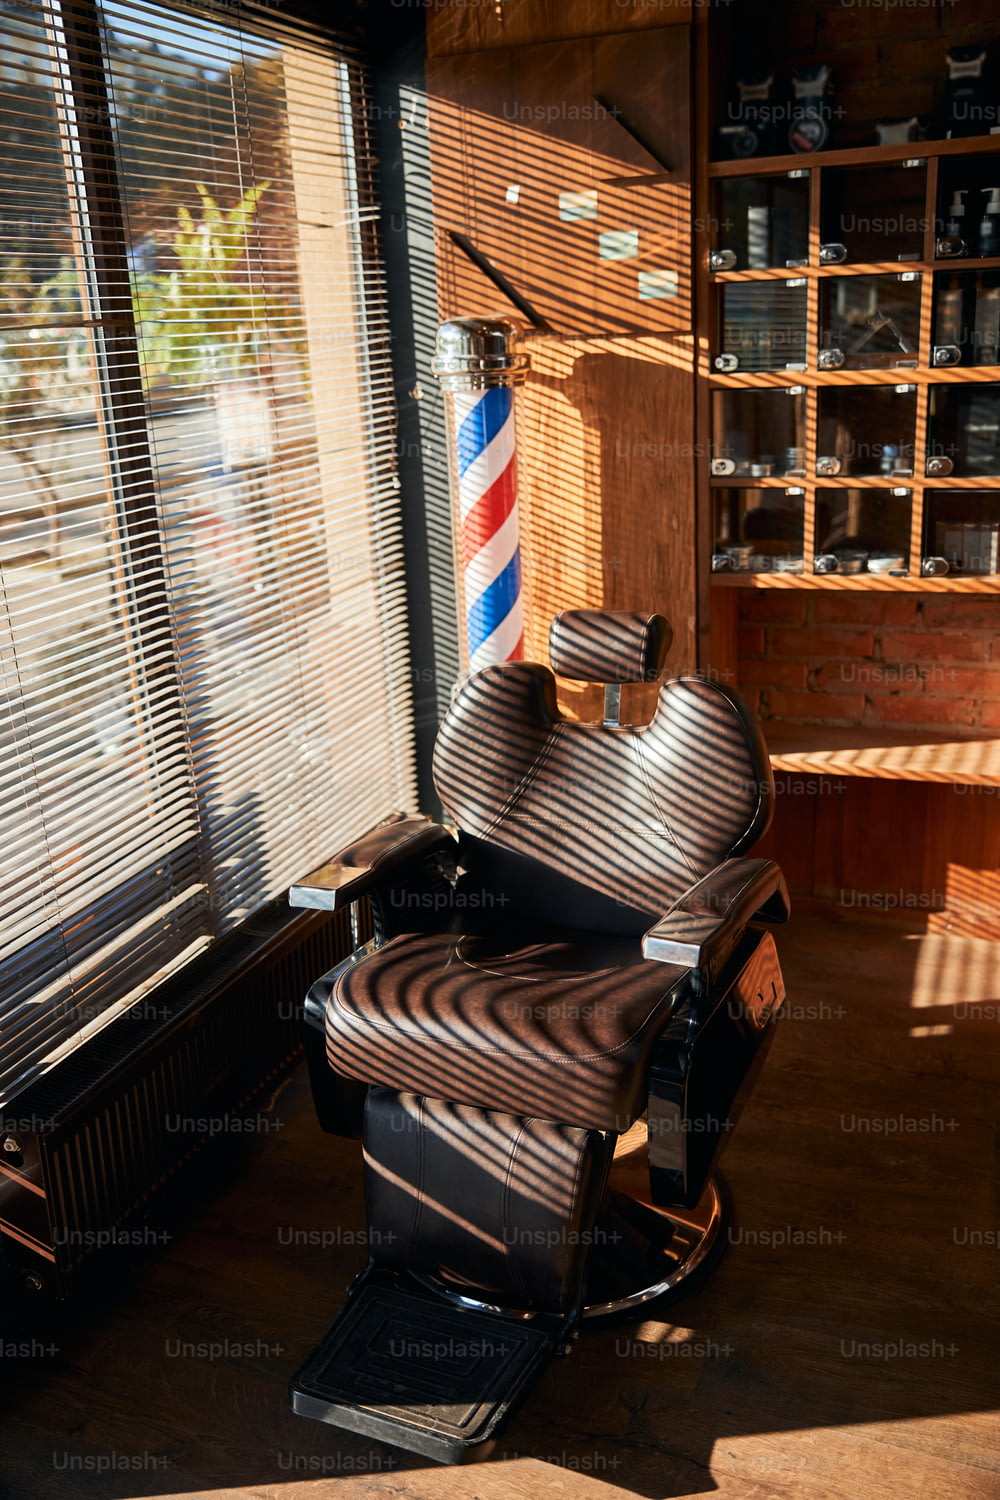 ブラインド付きの窓際にある調節可能なヘッドレスト付きのリクライニングブラウンの革張りの理髪椅子